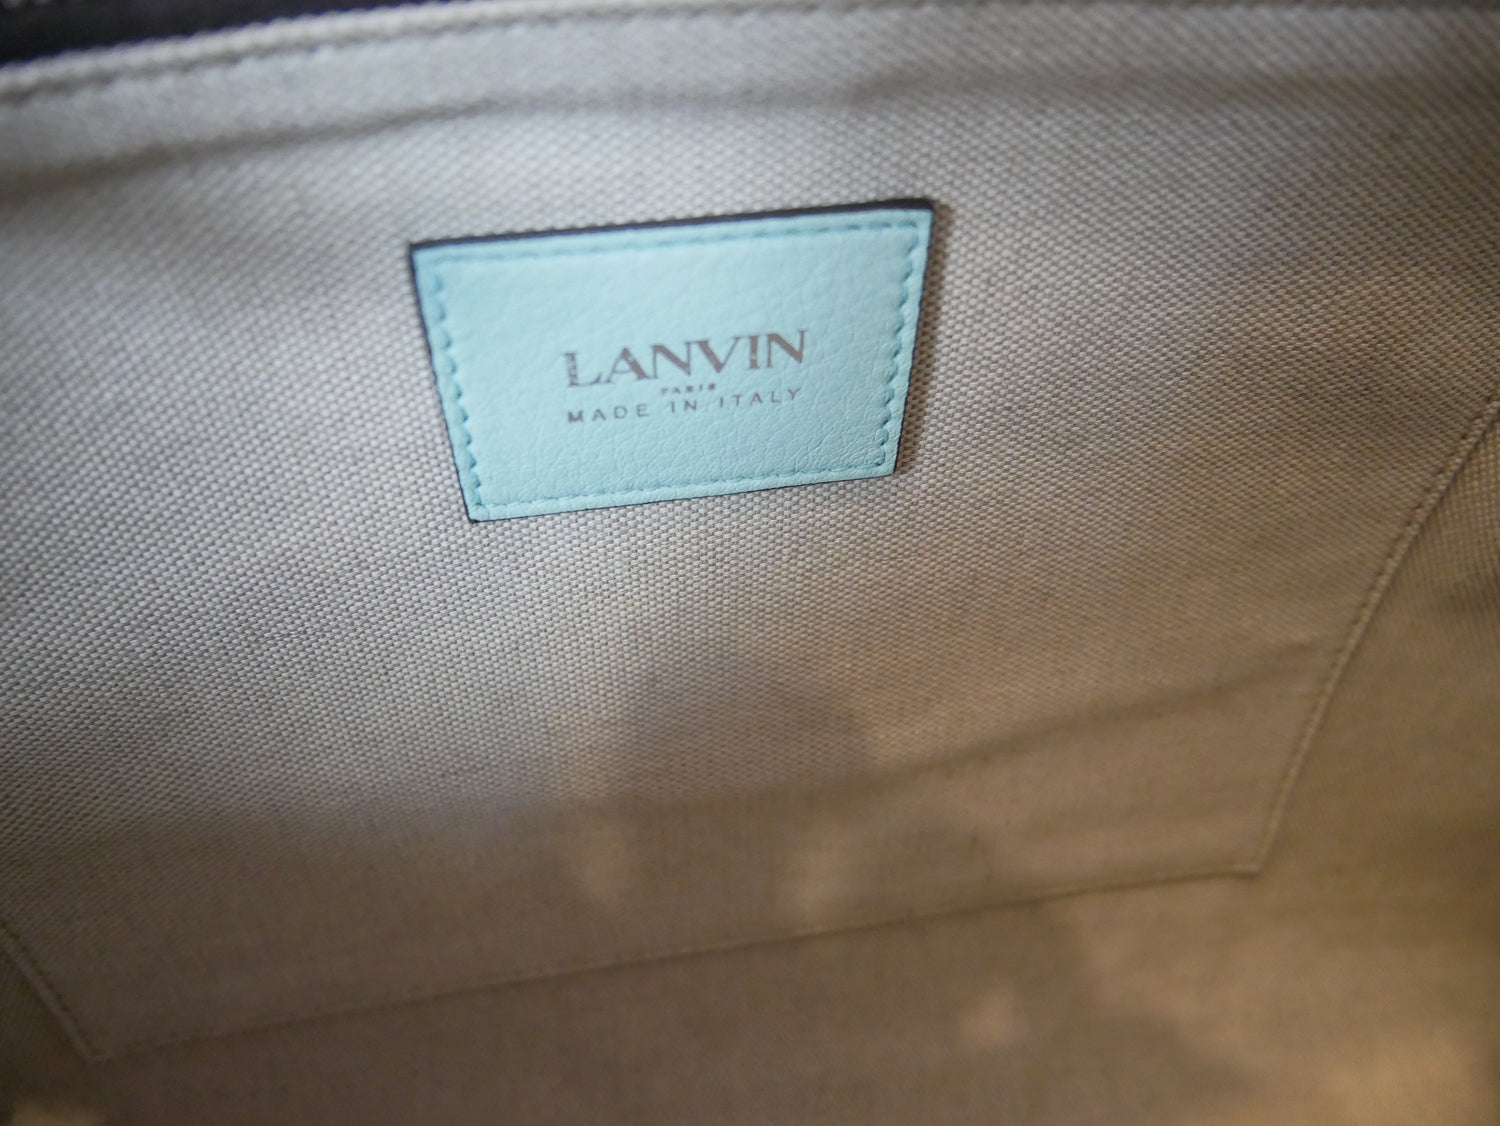 LANVIN Shoulder bags vintage Lysis Paris pre-owned secondhand